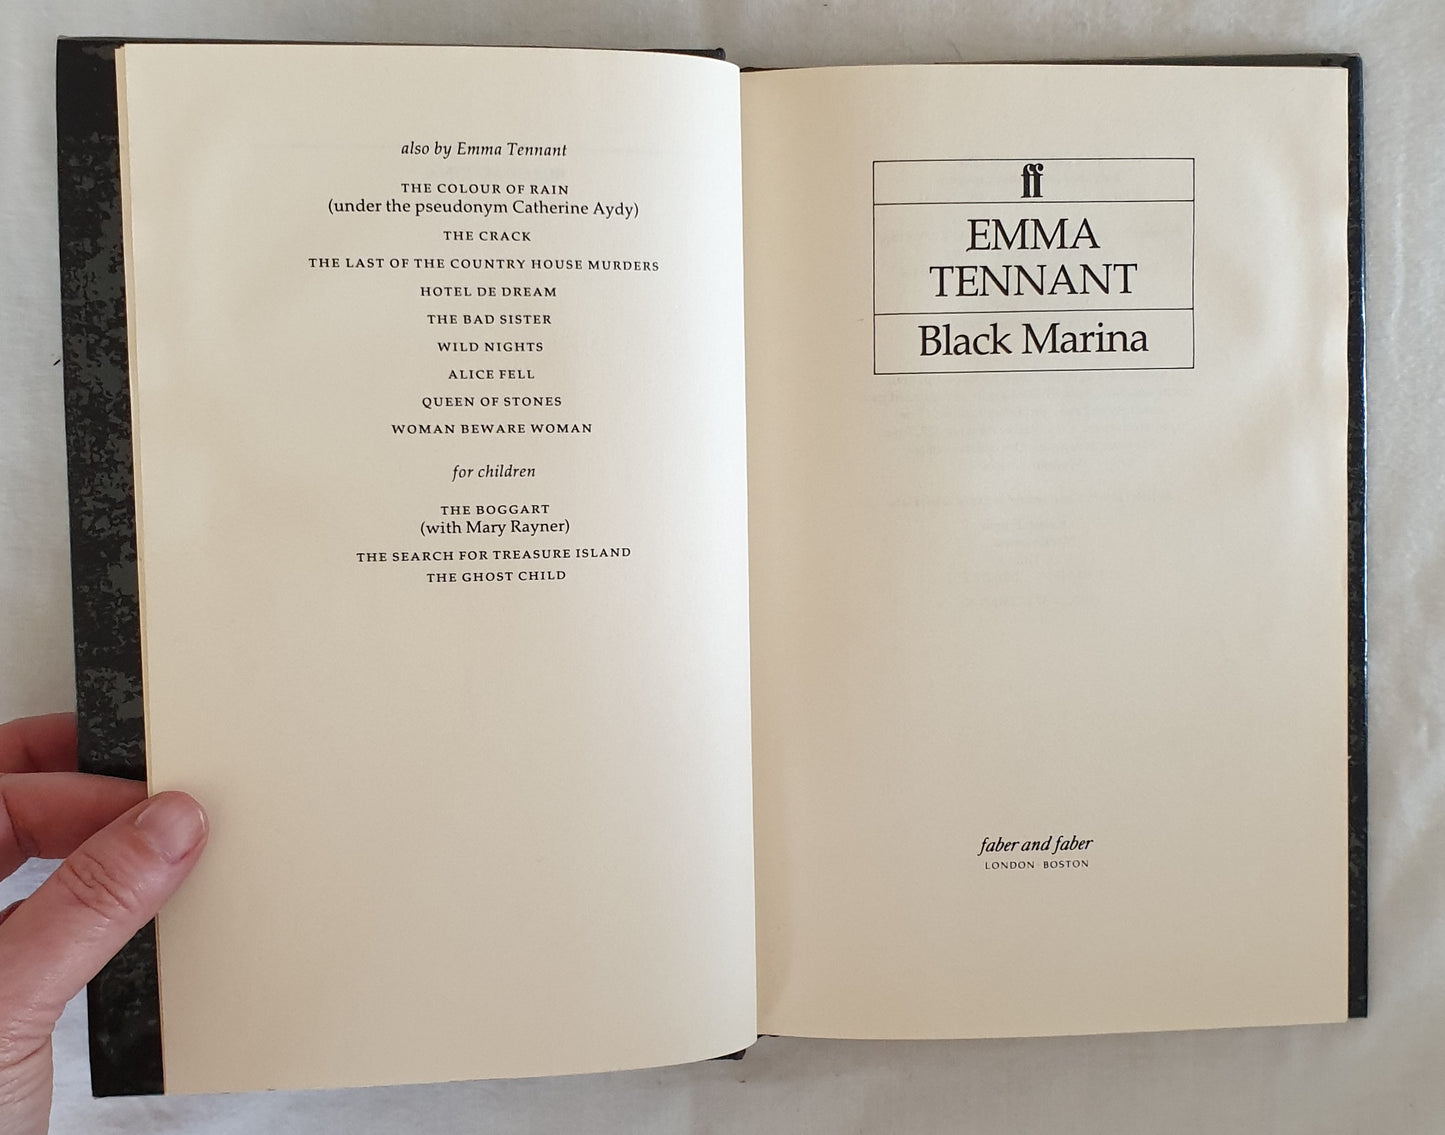 Black Marina by Emma Tennant